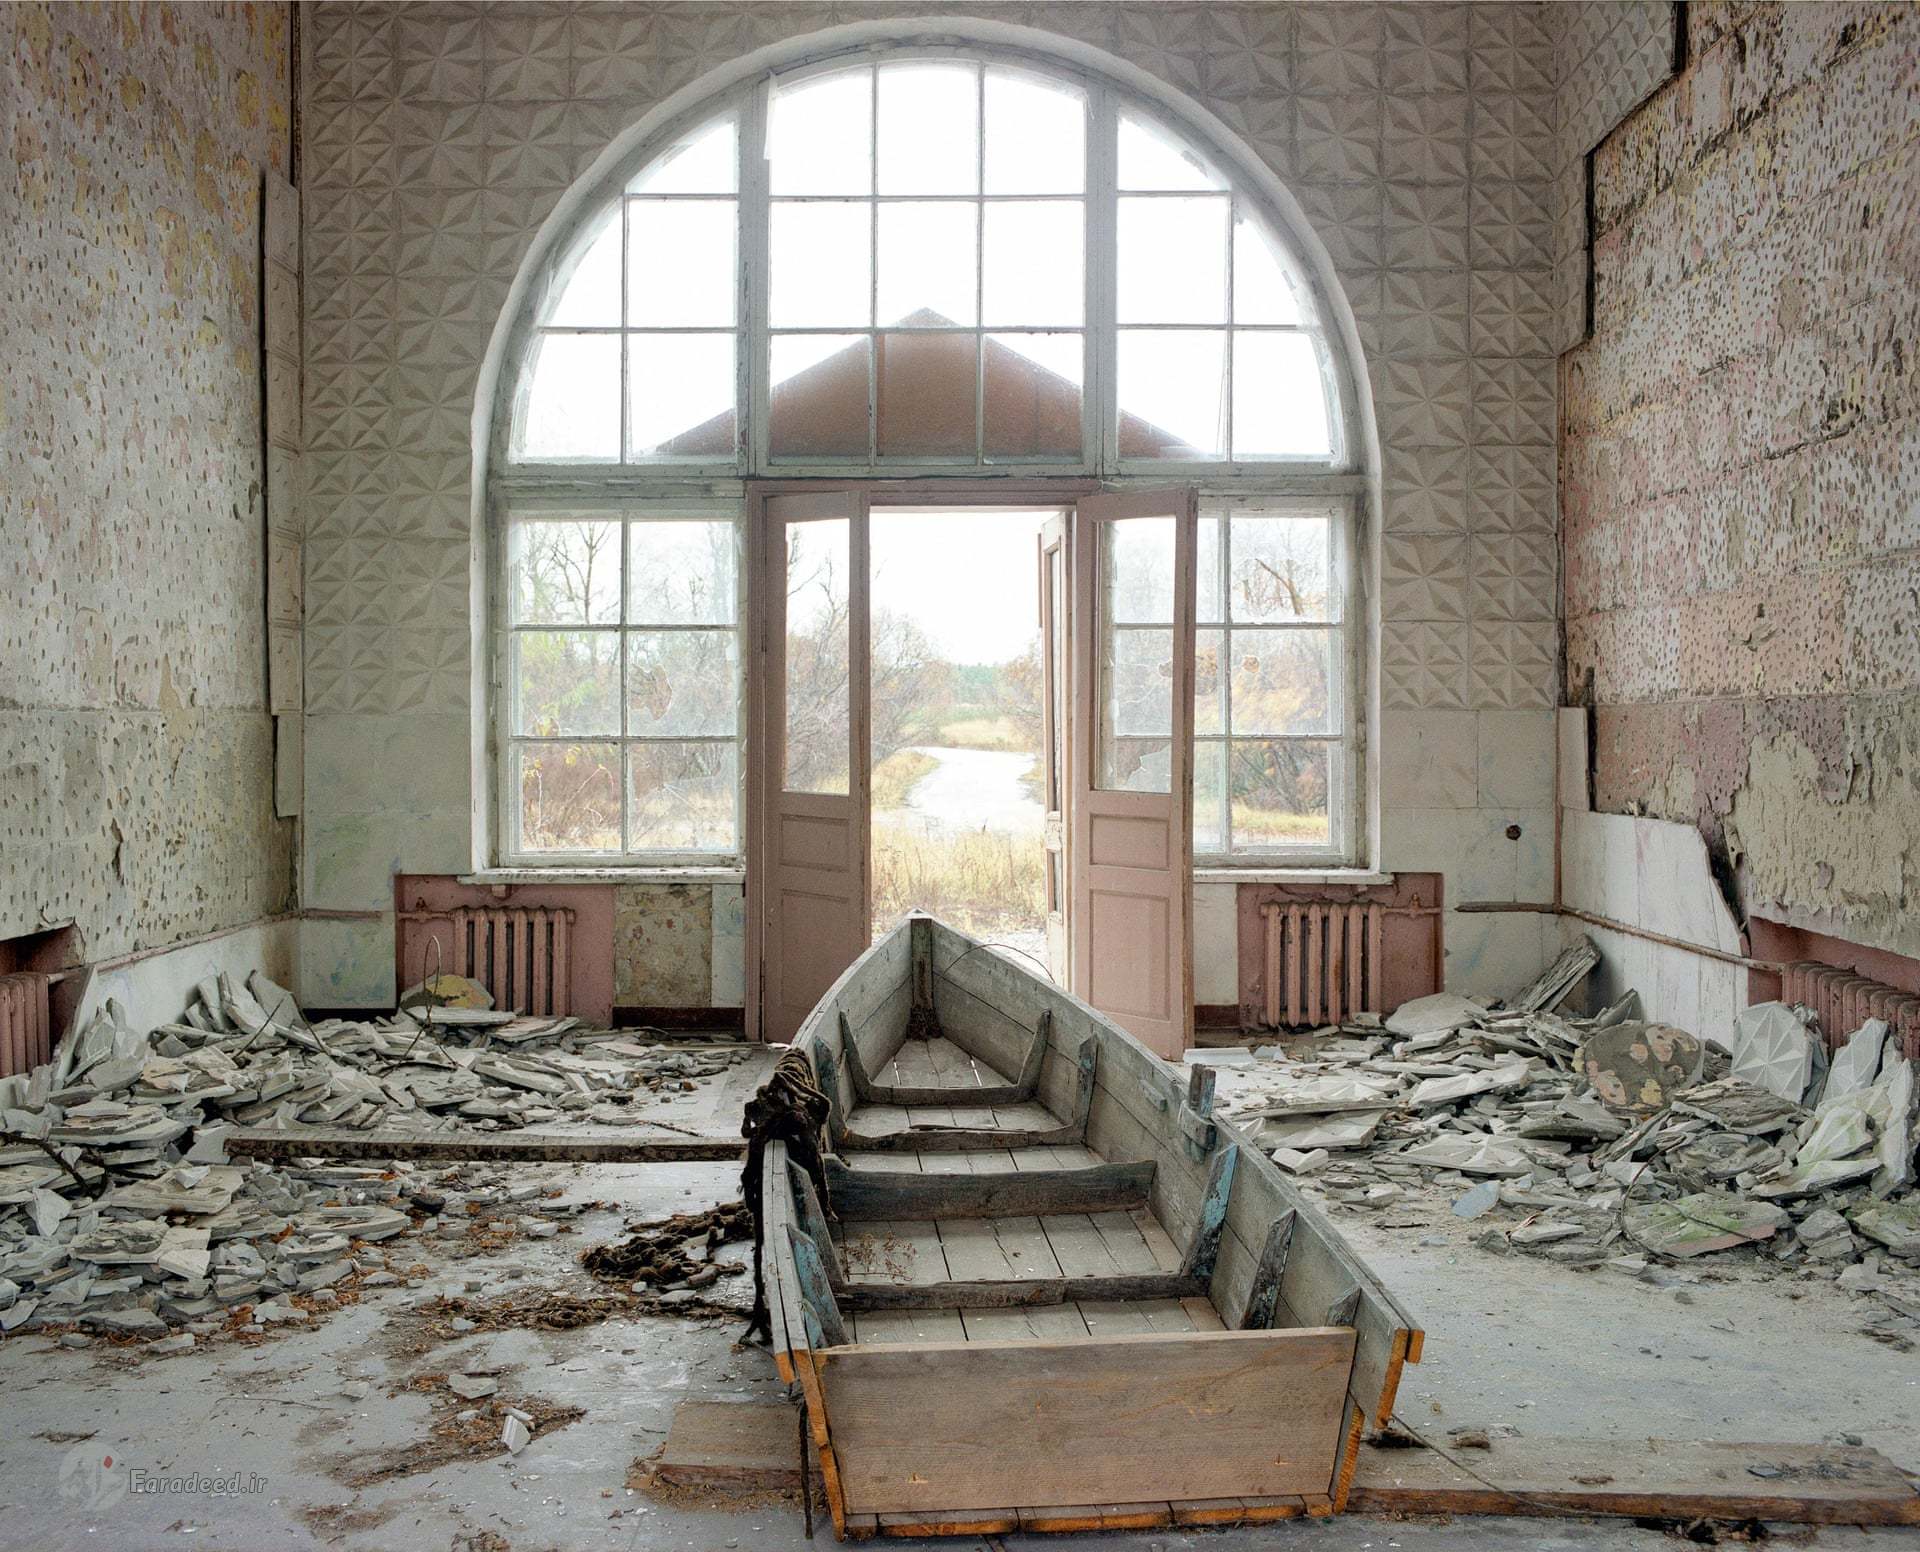 شهر چرنوبیل ۳۳ سال پس از حادثه اتمی +تصاویر